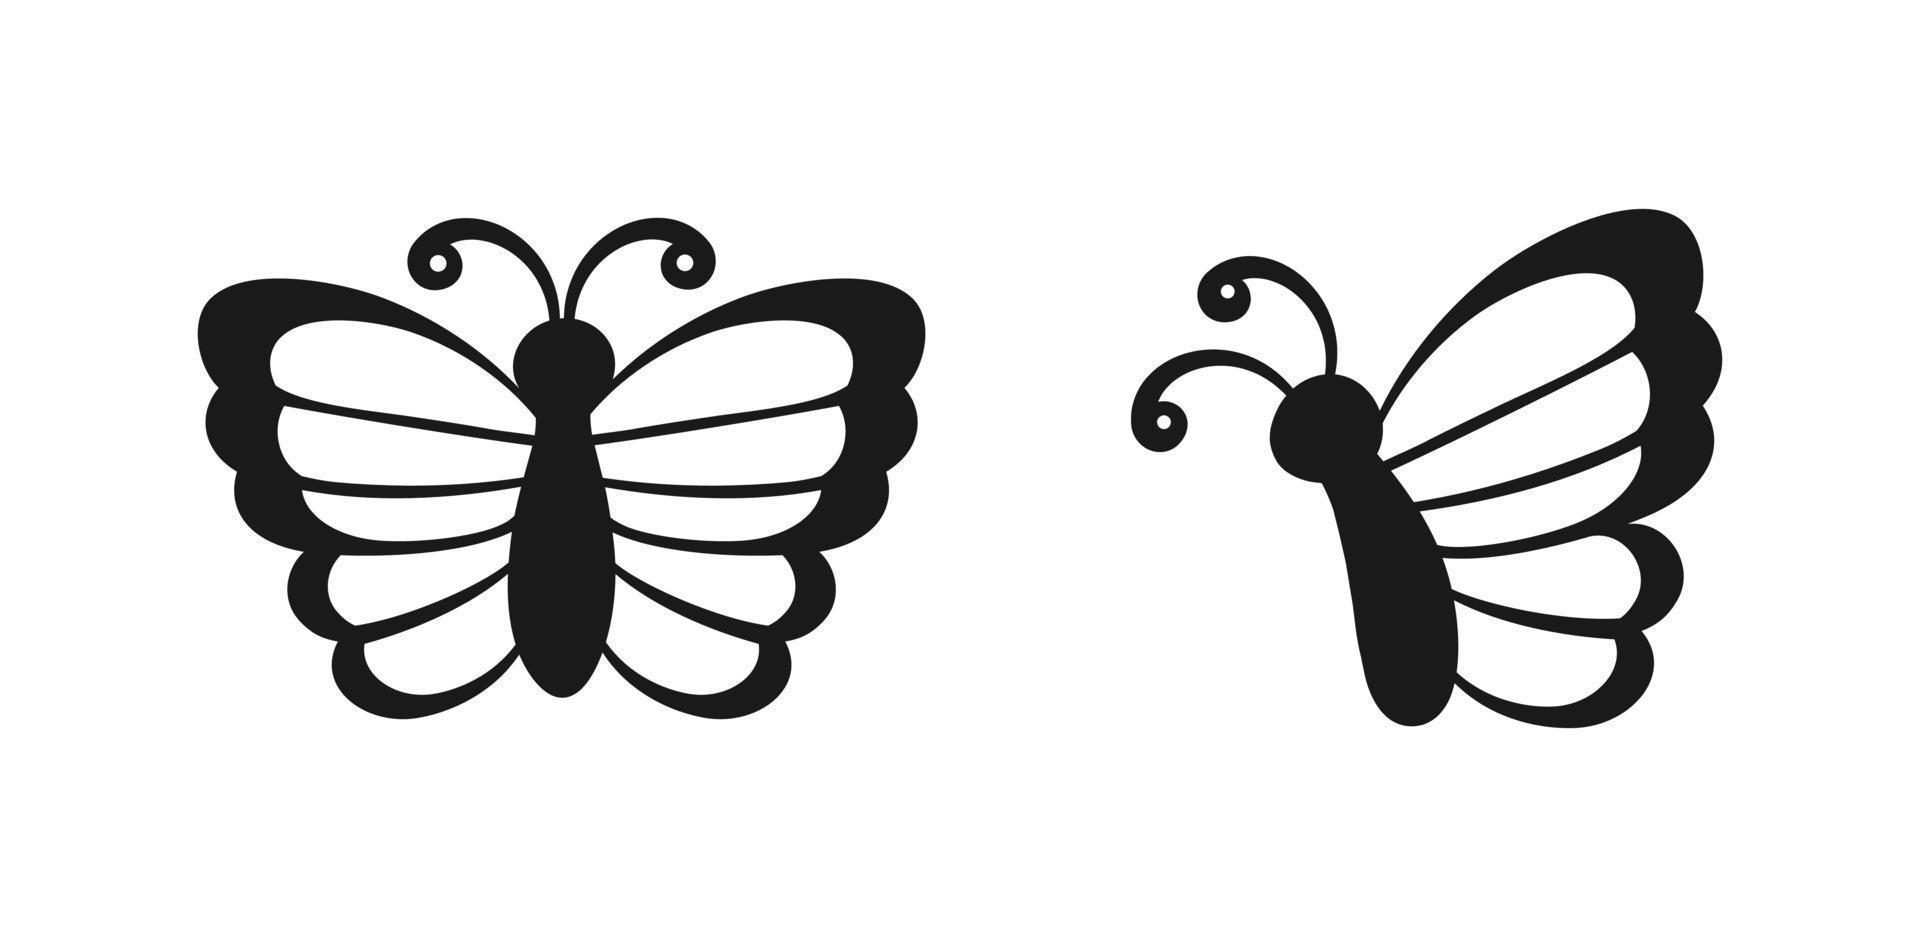 süß Schmetterling Symbol Vorderseite und Seite Aussicht Silhouette Satz. Frühling Sommer- Natur Logo Design vektor